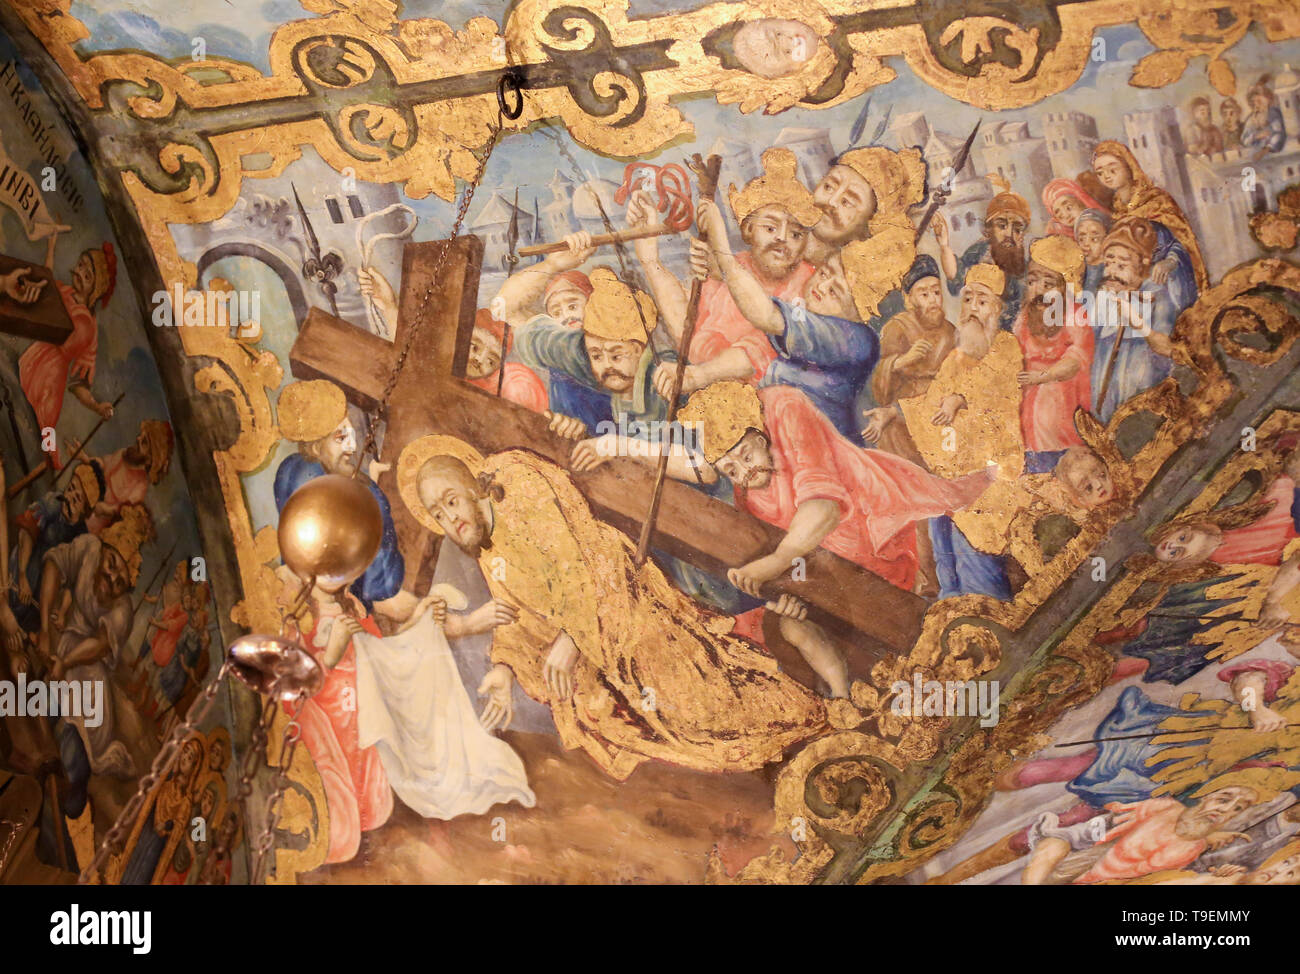 Greco-ortodossi affresco nella chiesa del Santo Sepolcro di Gerusalemme, raffigurante la caduta di Gesù sotto la croce sulla Via Dolorosa e incontro Veroni Foto Stock